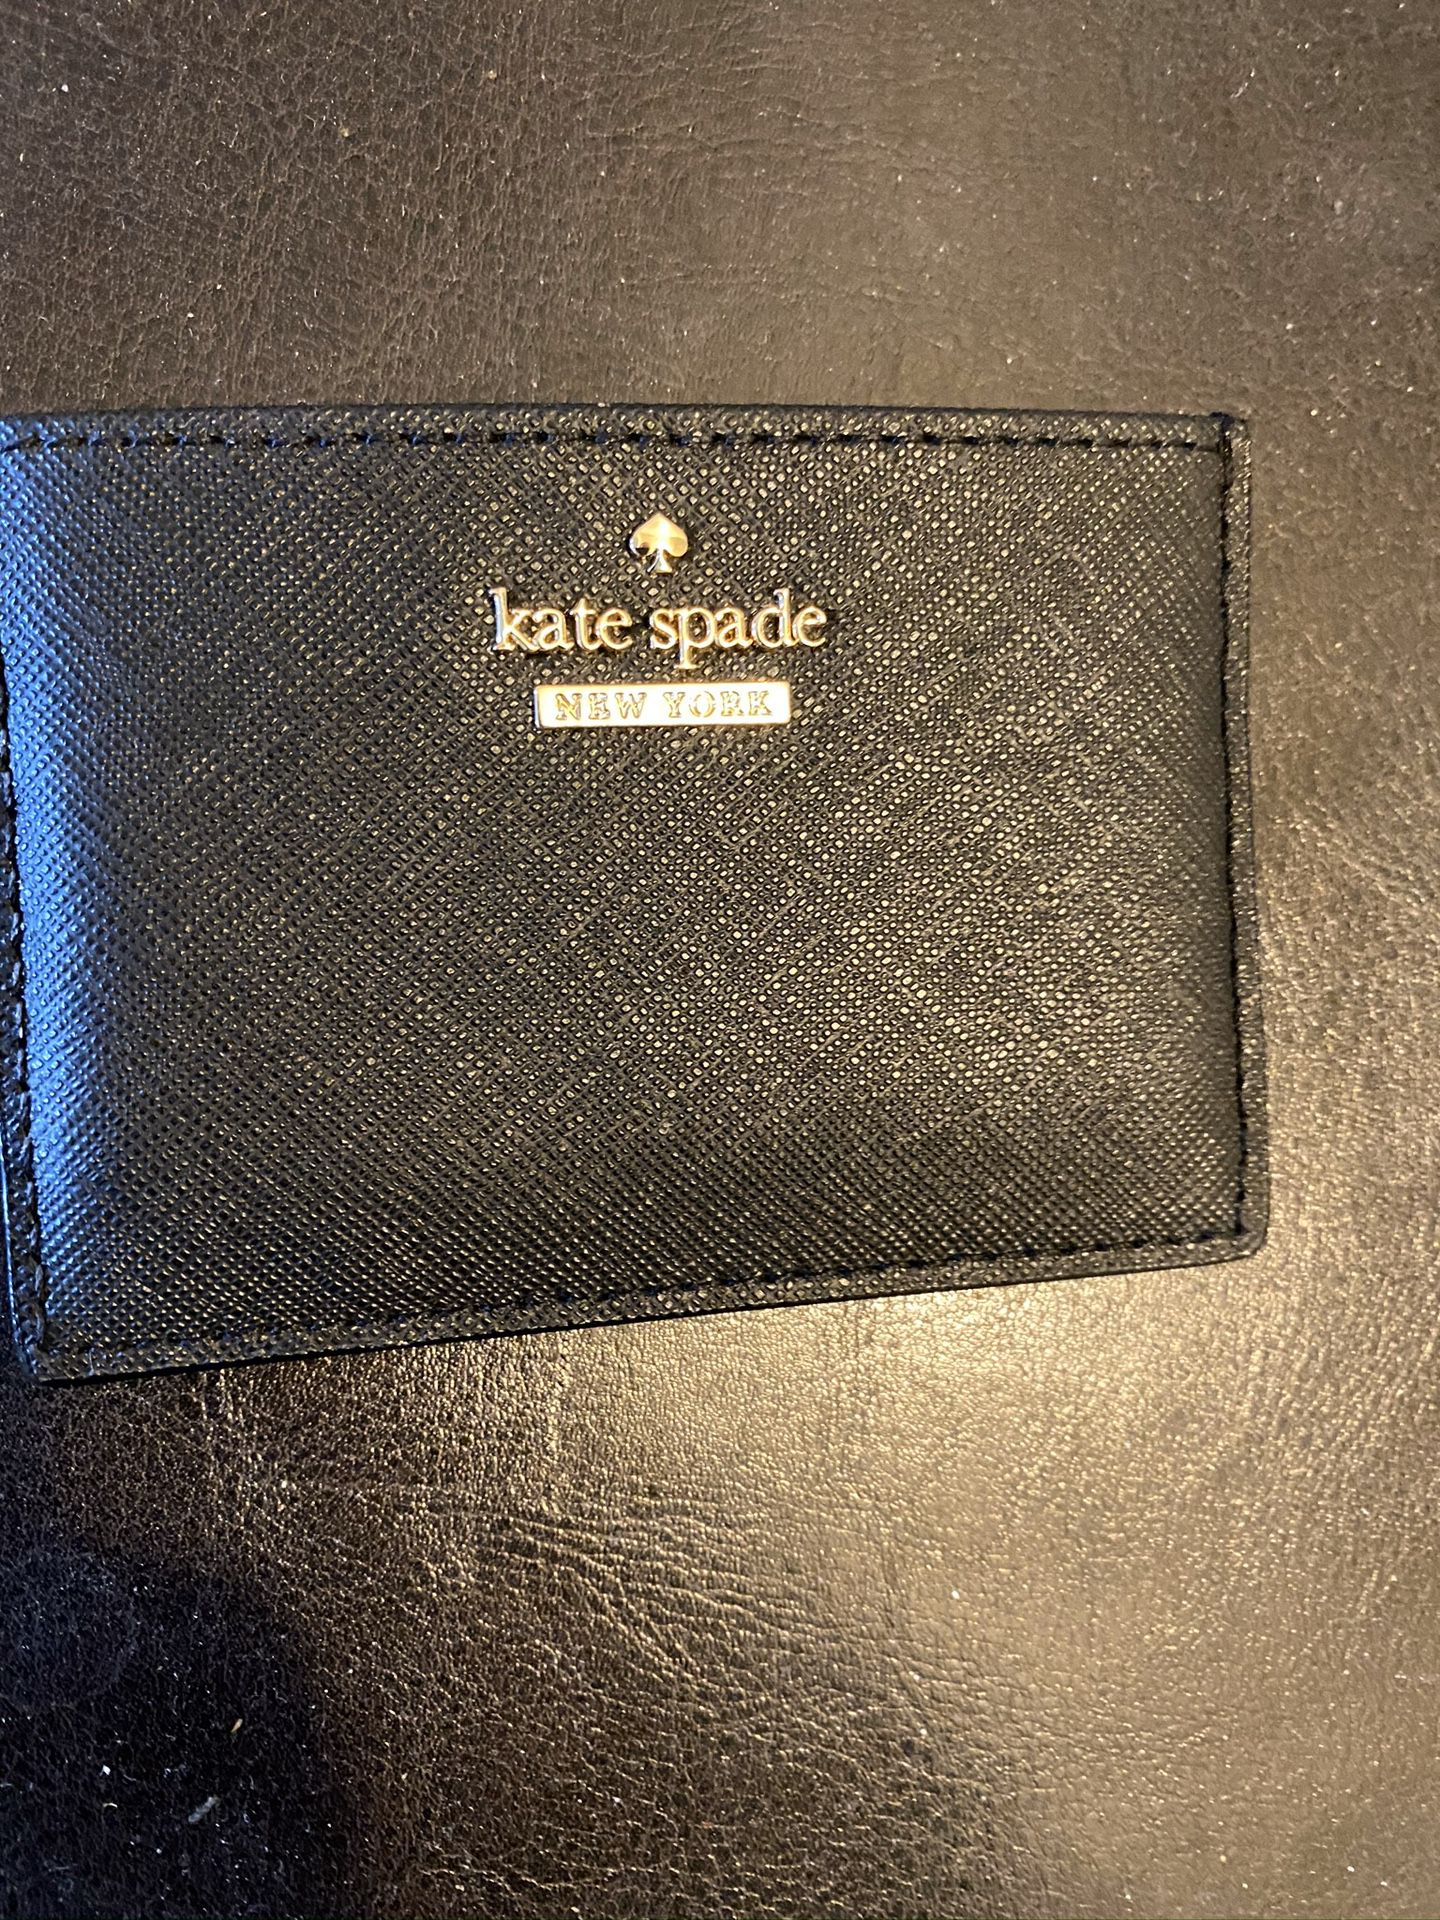 Kate Spade credit card holder